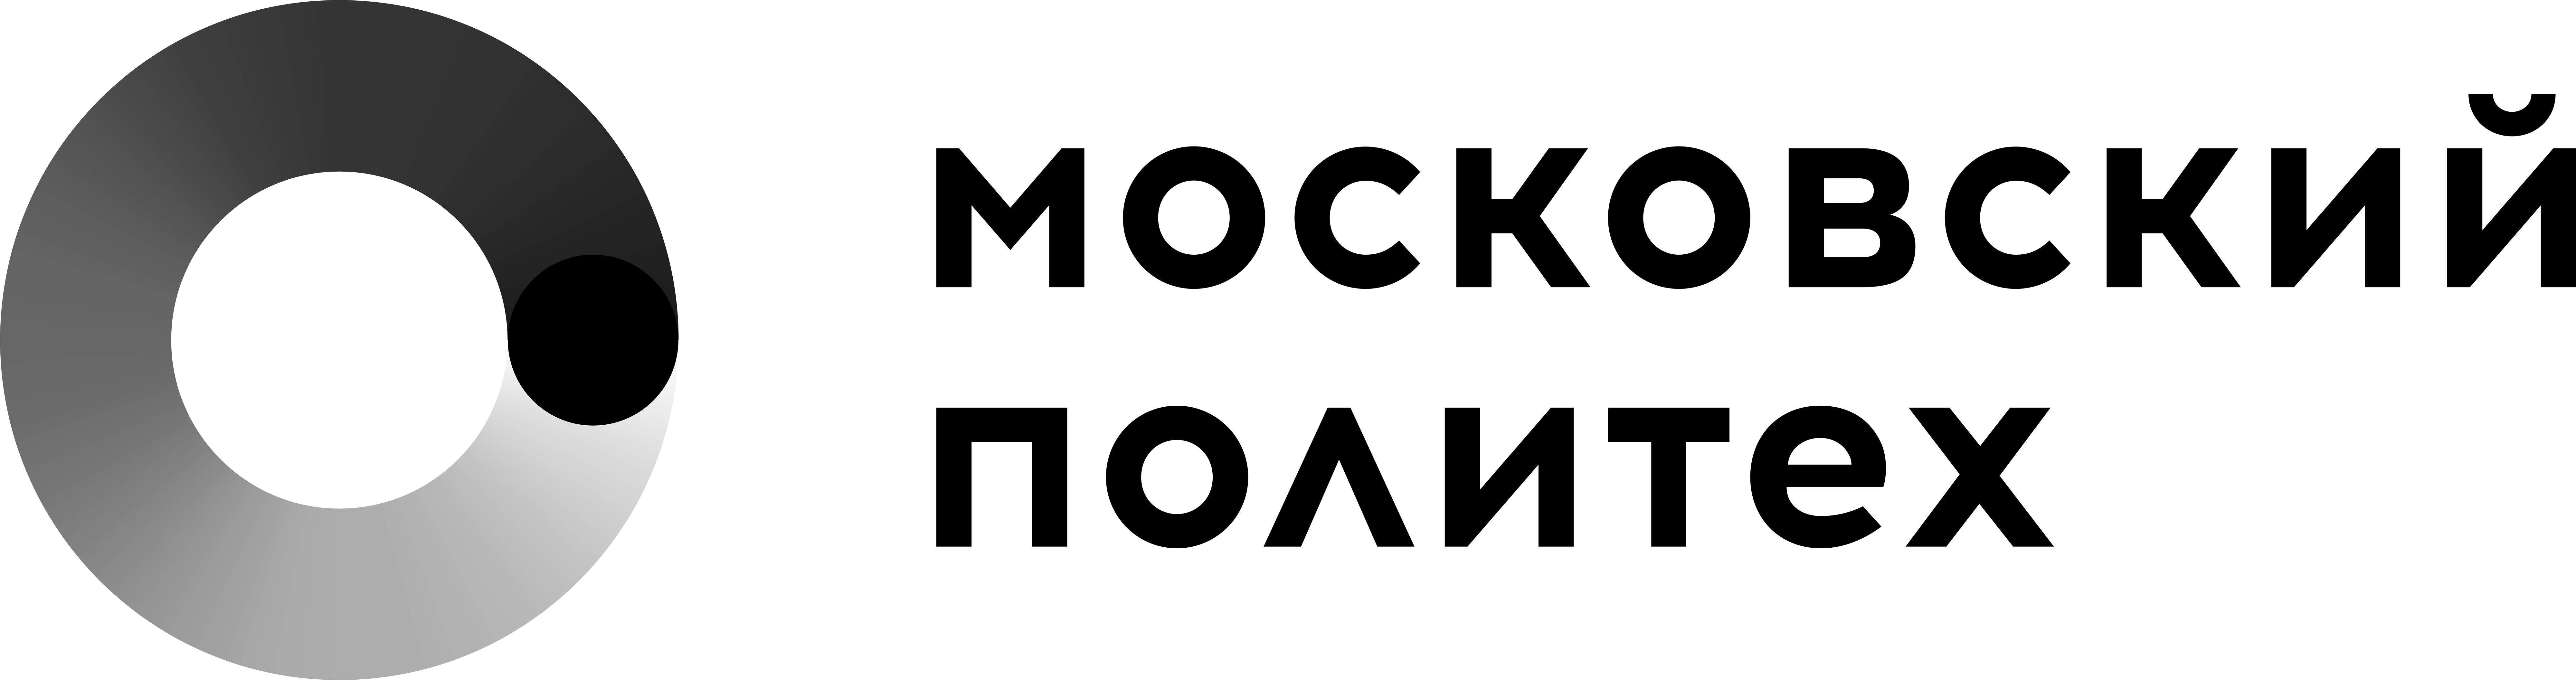 Типография Издательства Московского политехнического университета